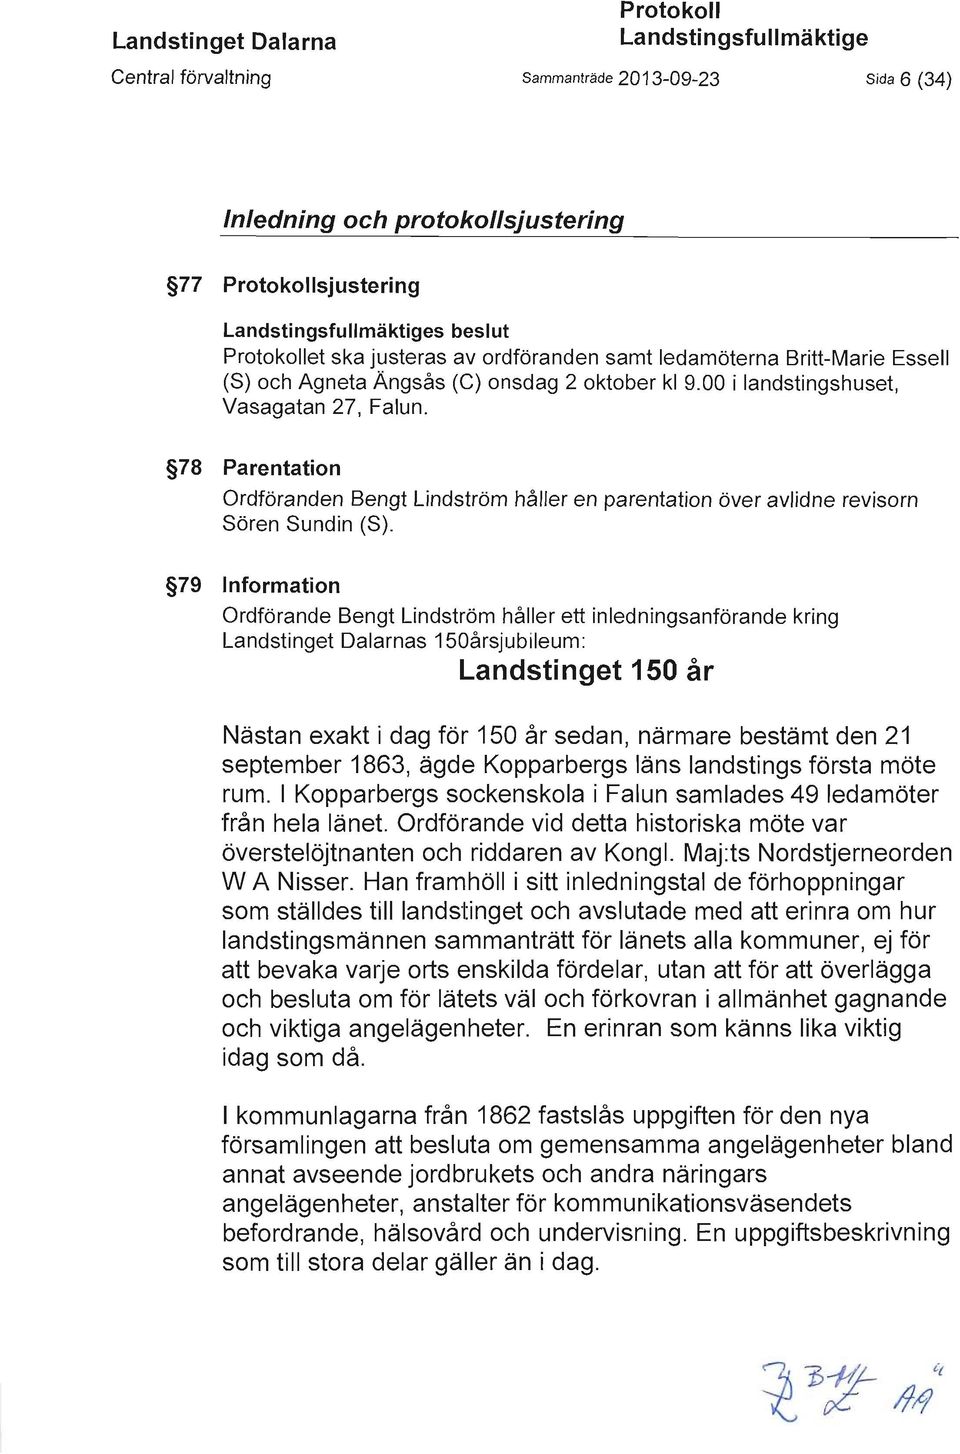 78 Parentation Ordföranden Bengt Lindström håller en parentation över avlidne revisorn Sören Sundin (S).